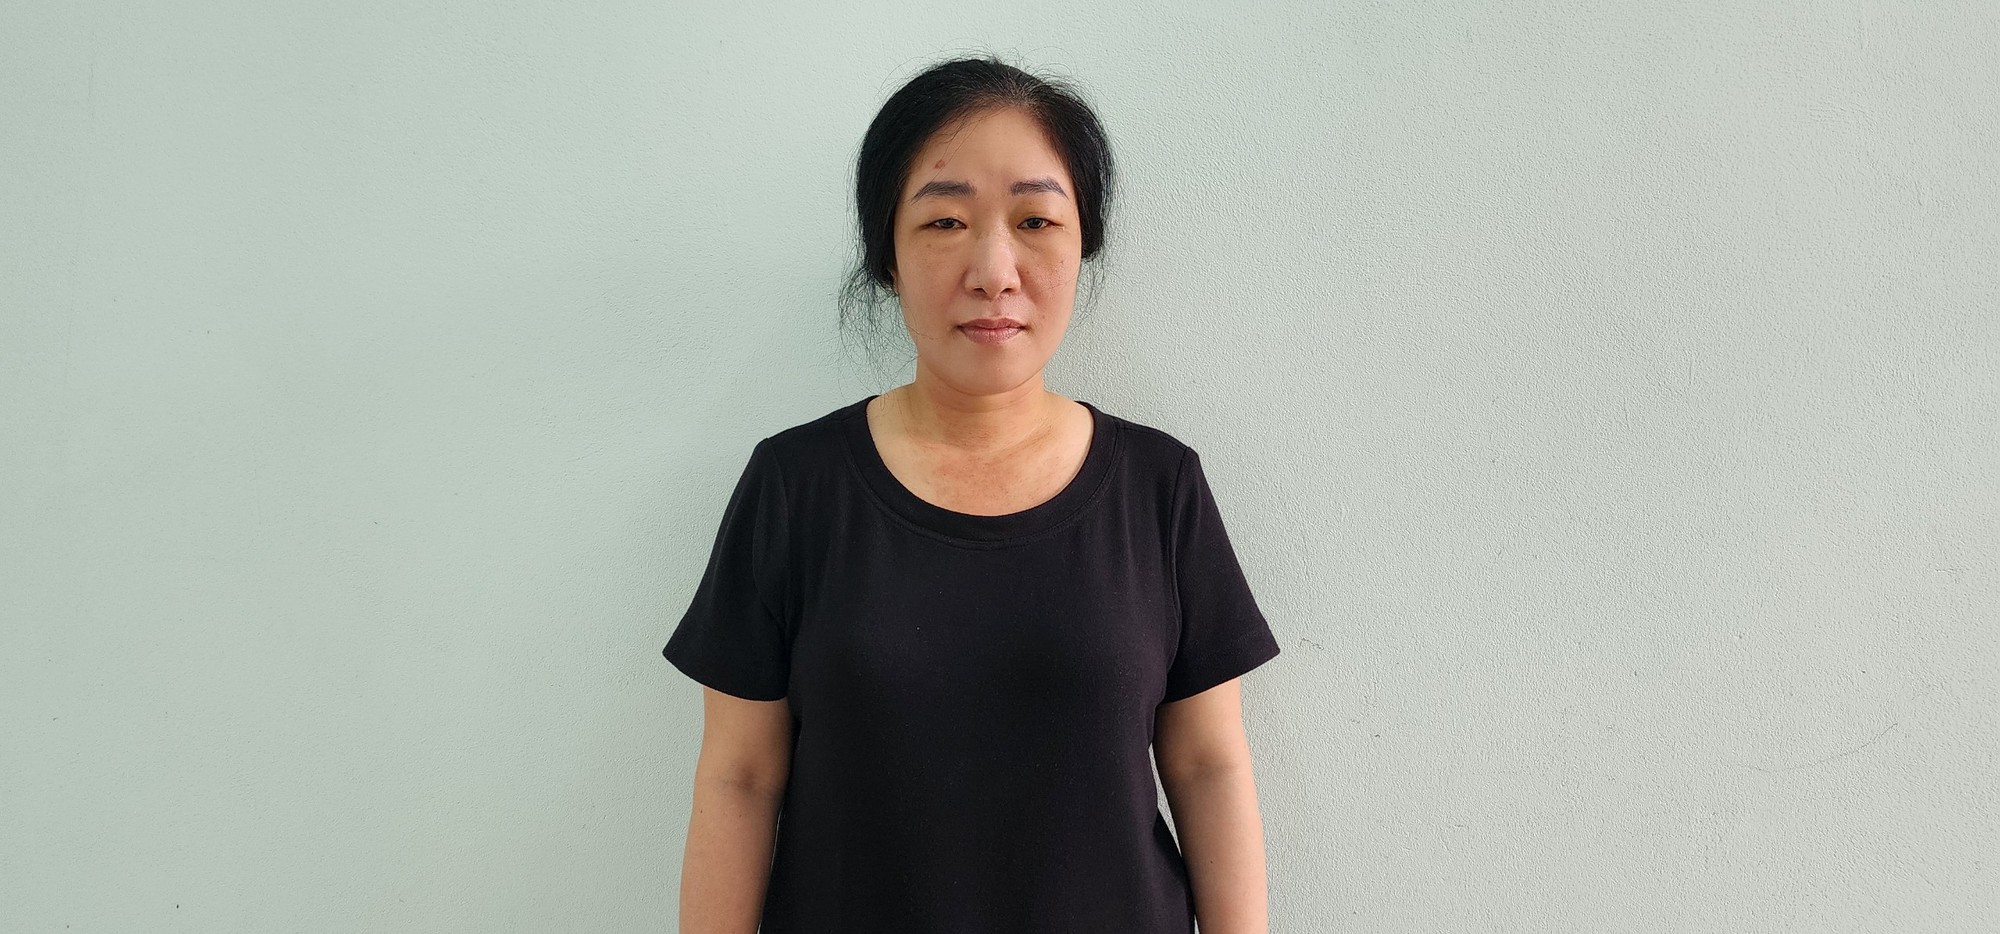 Bắt nữ thủ quỹ bưu điện ở Kiên Giang mở két sắt cơ quan lấy 1,5 tỷ đồng - Ảnh 1.